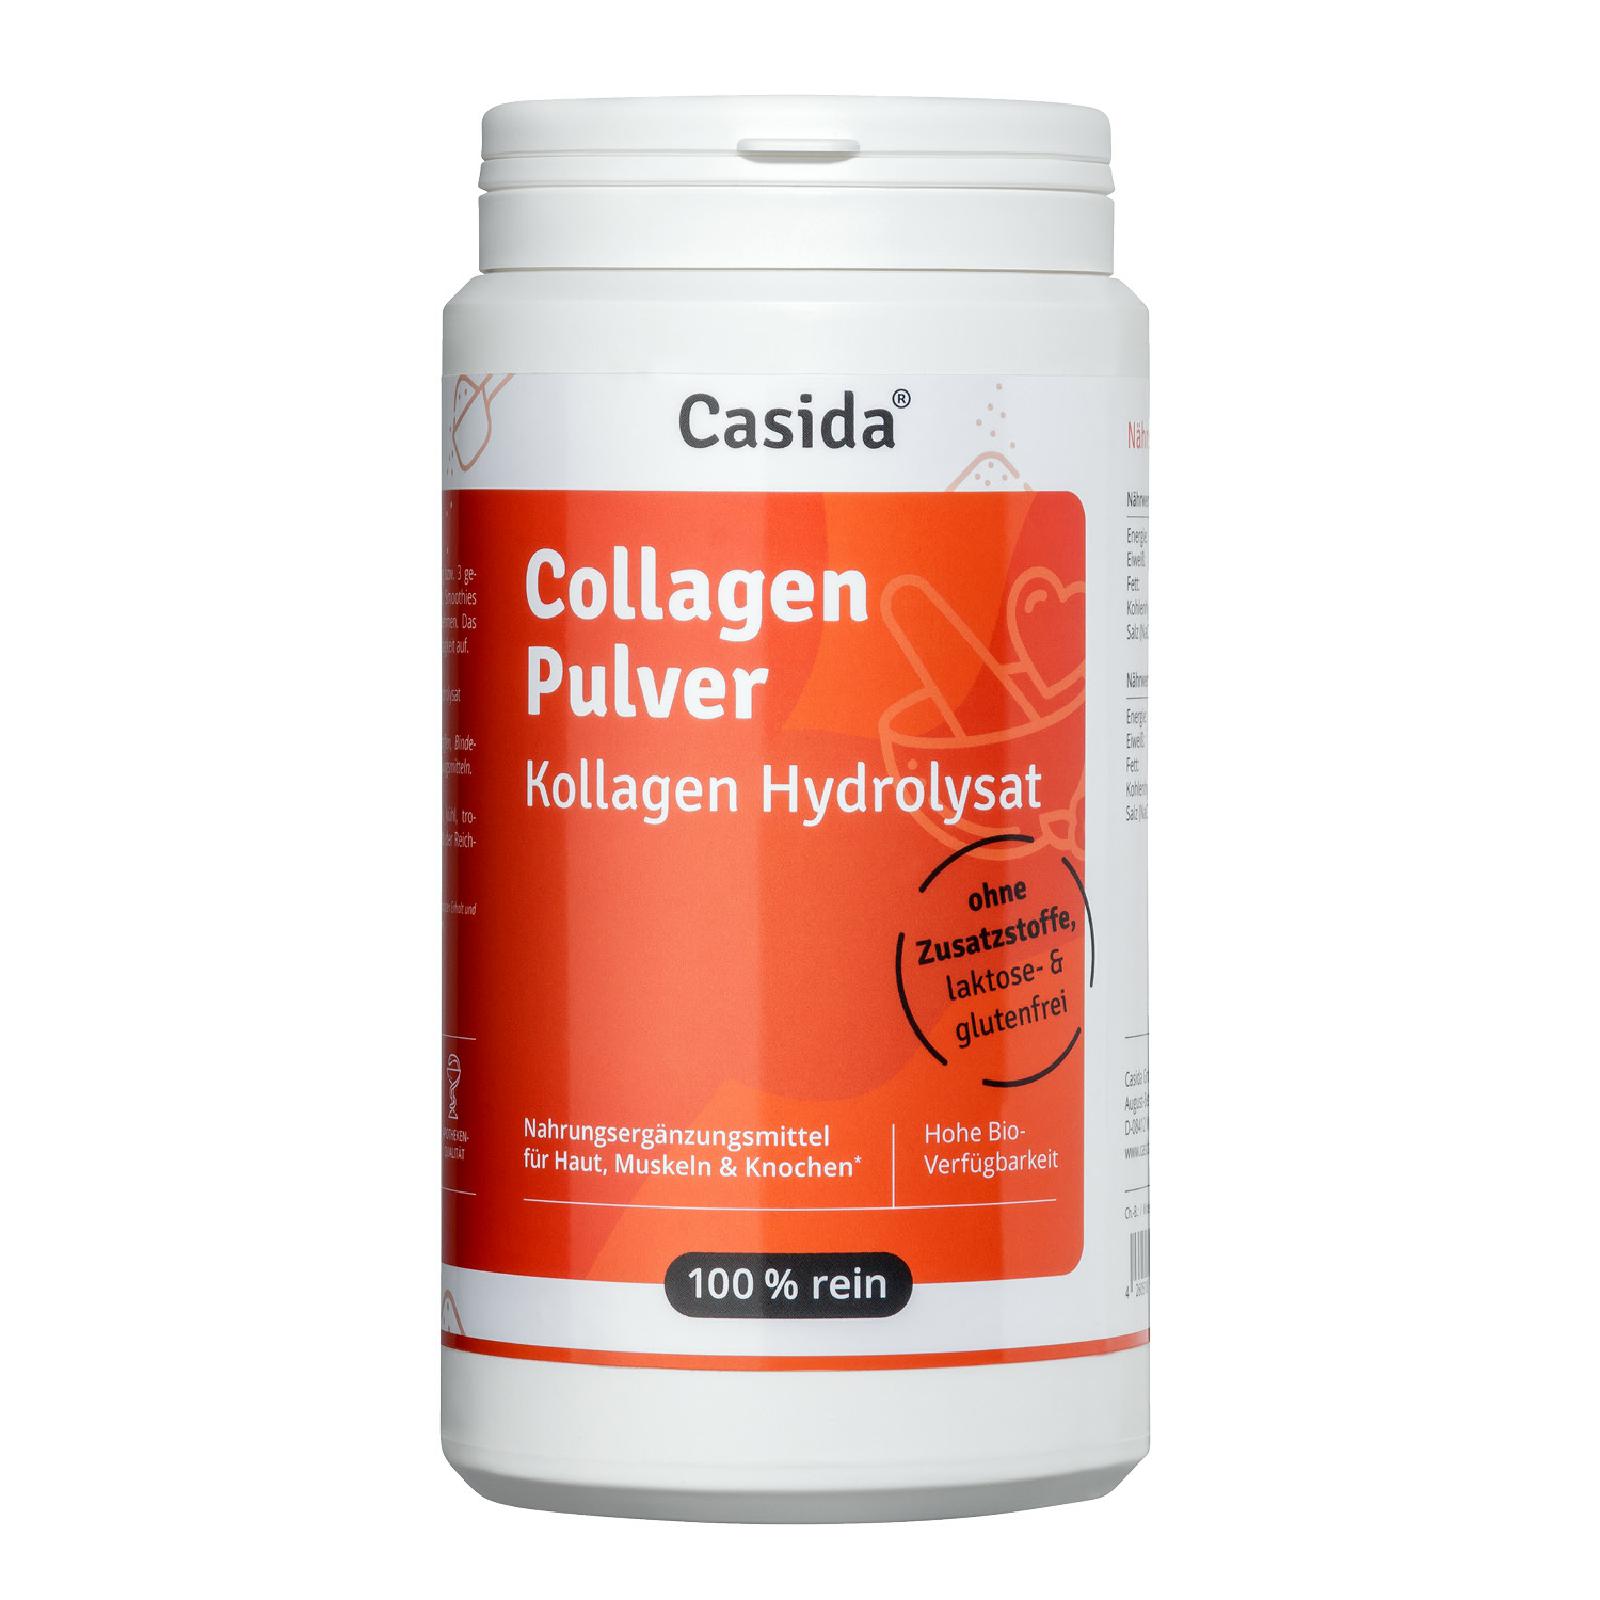 Casida Collagen Pulver – Kollagen Hydrolysat